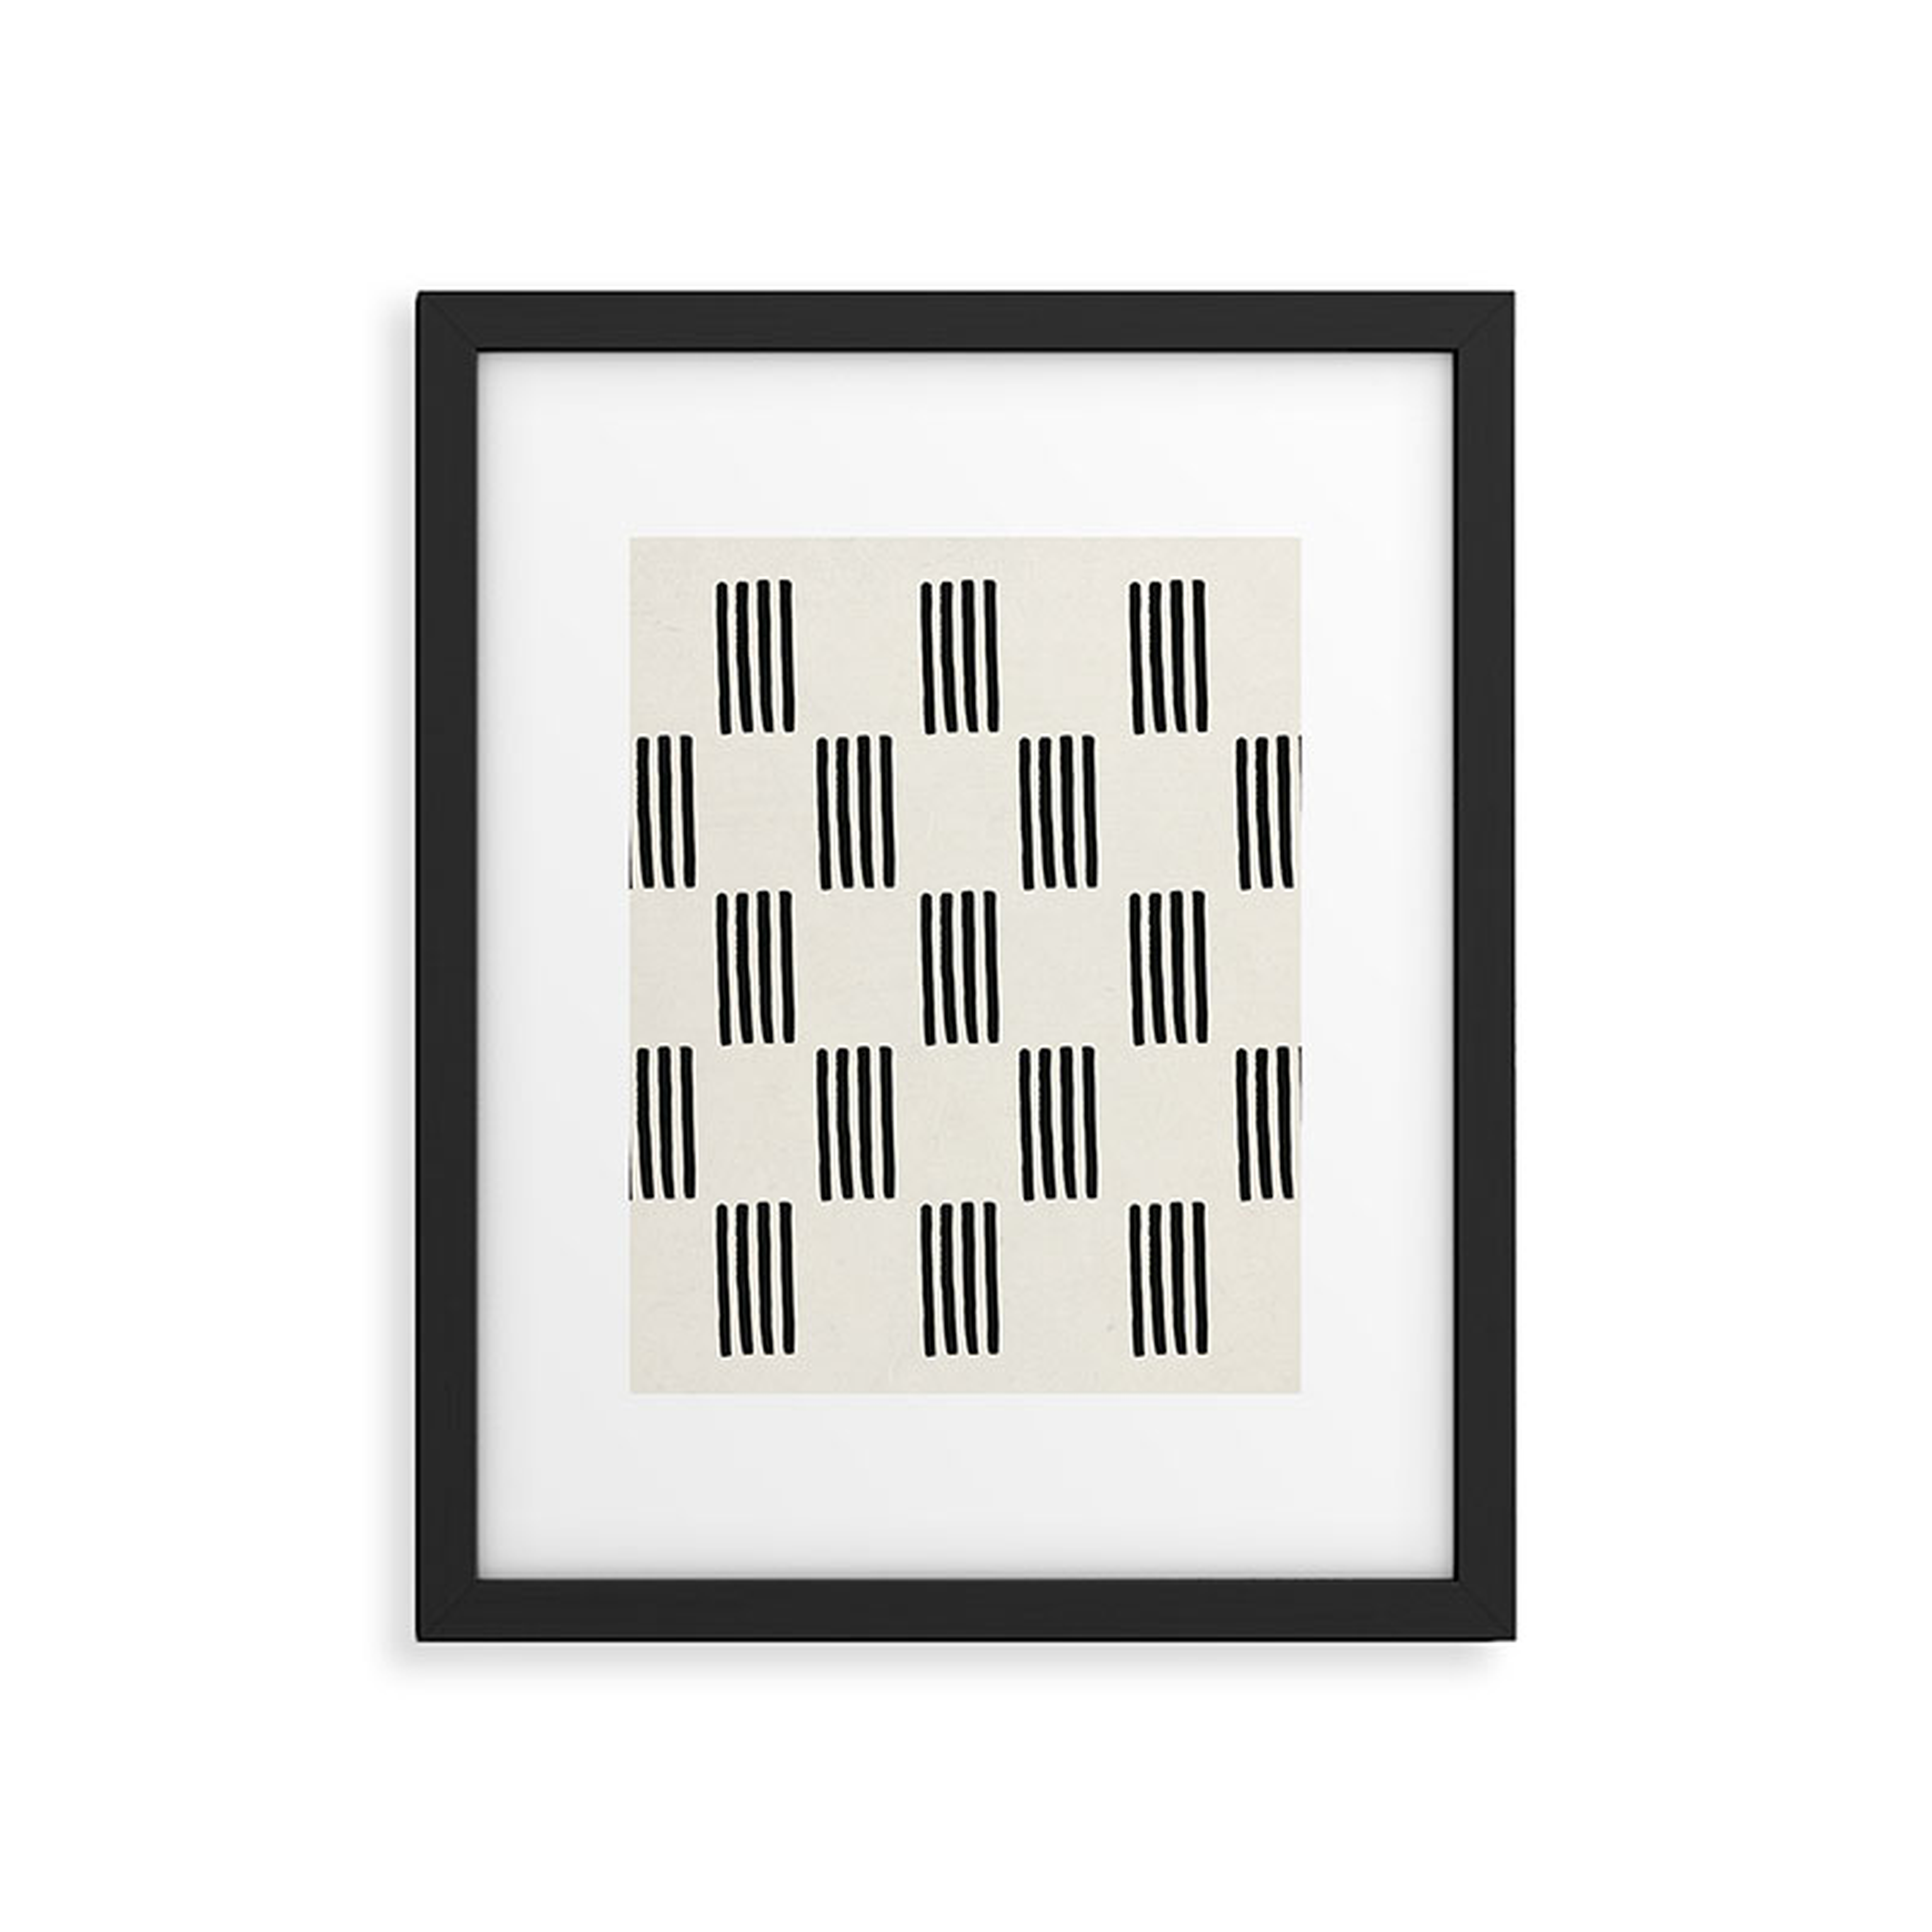 Formation by Rose Beck - Framed Art Print Modern Black 18" x 24" - Wander Print Co.